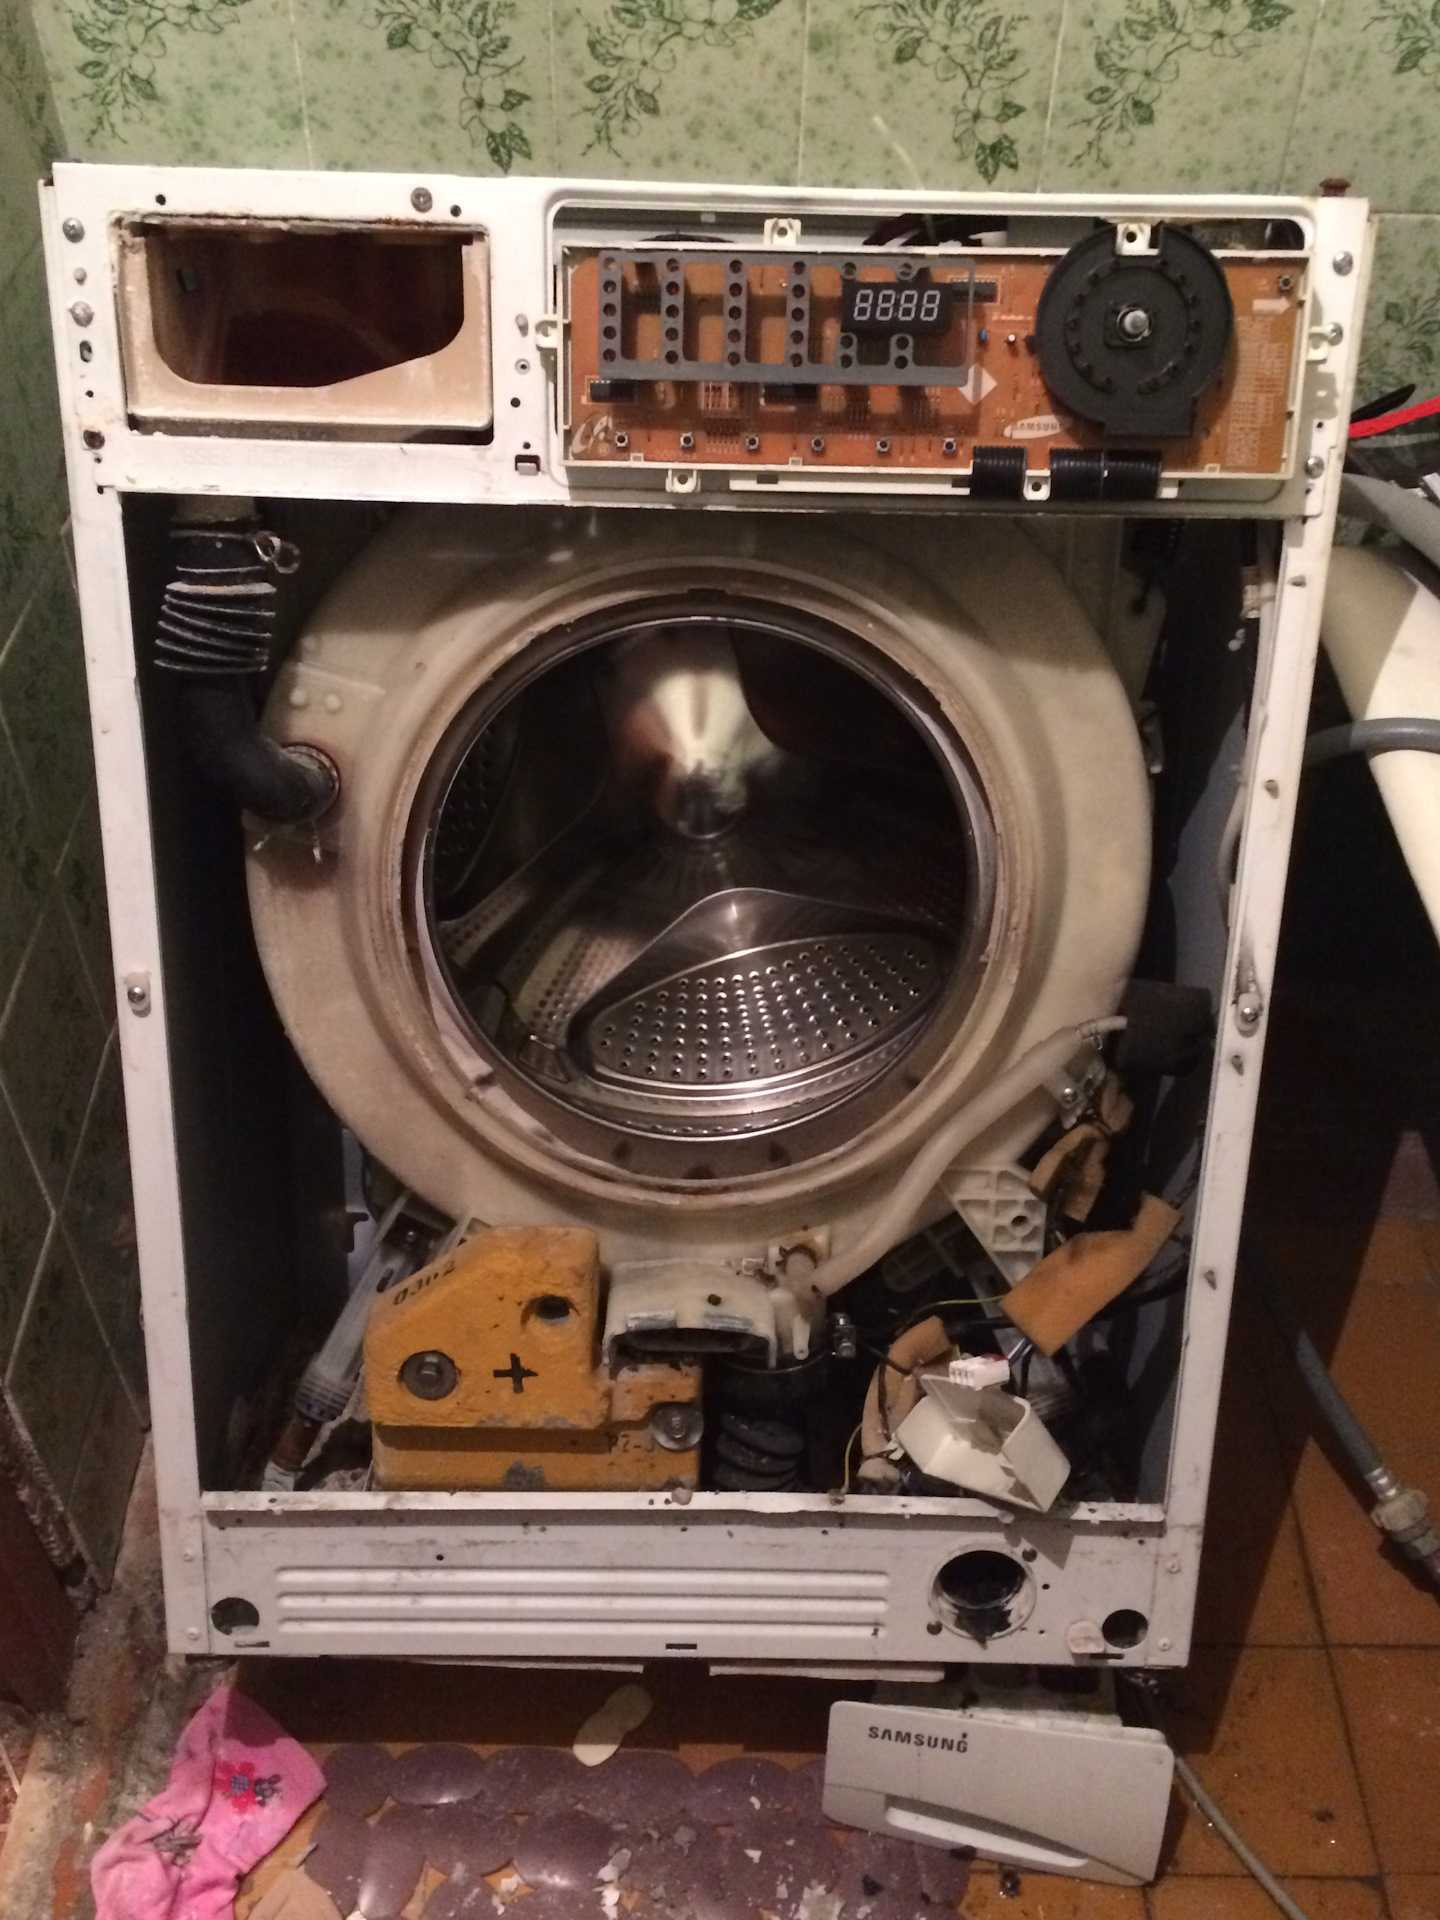 Разбитые стиральные машины. Стиральная машина. Сломанная стиральная машина. Поломанная стиральная машина. Разобранная стиральная машина.